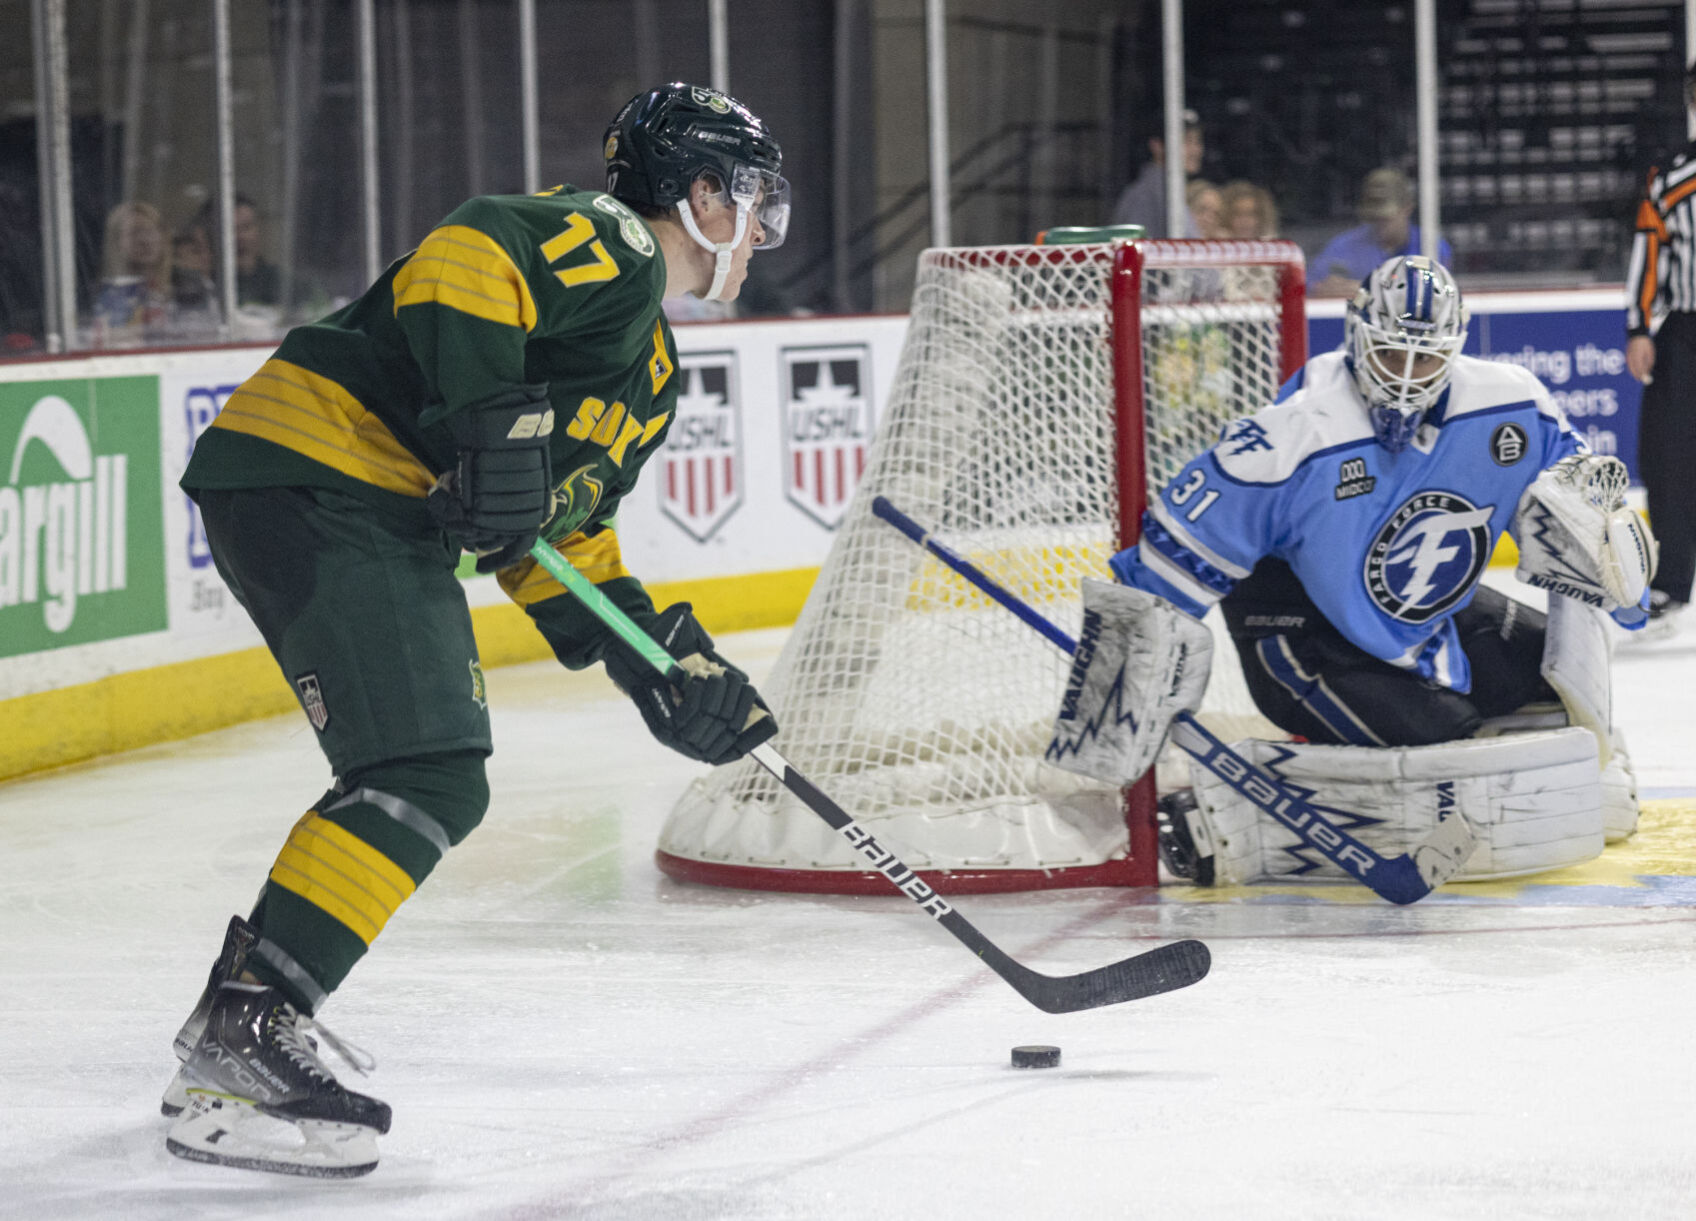 Grant Slukynsky scores first USHL goal against Fargo